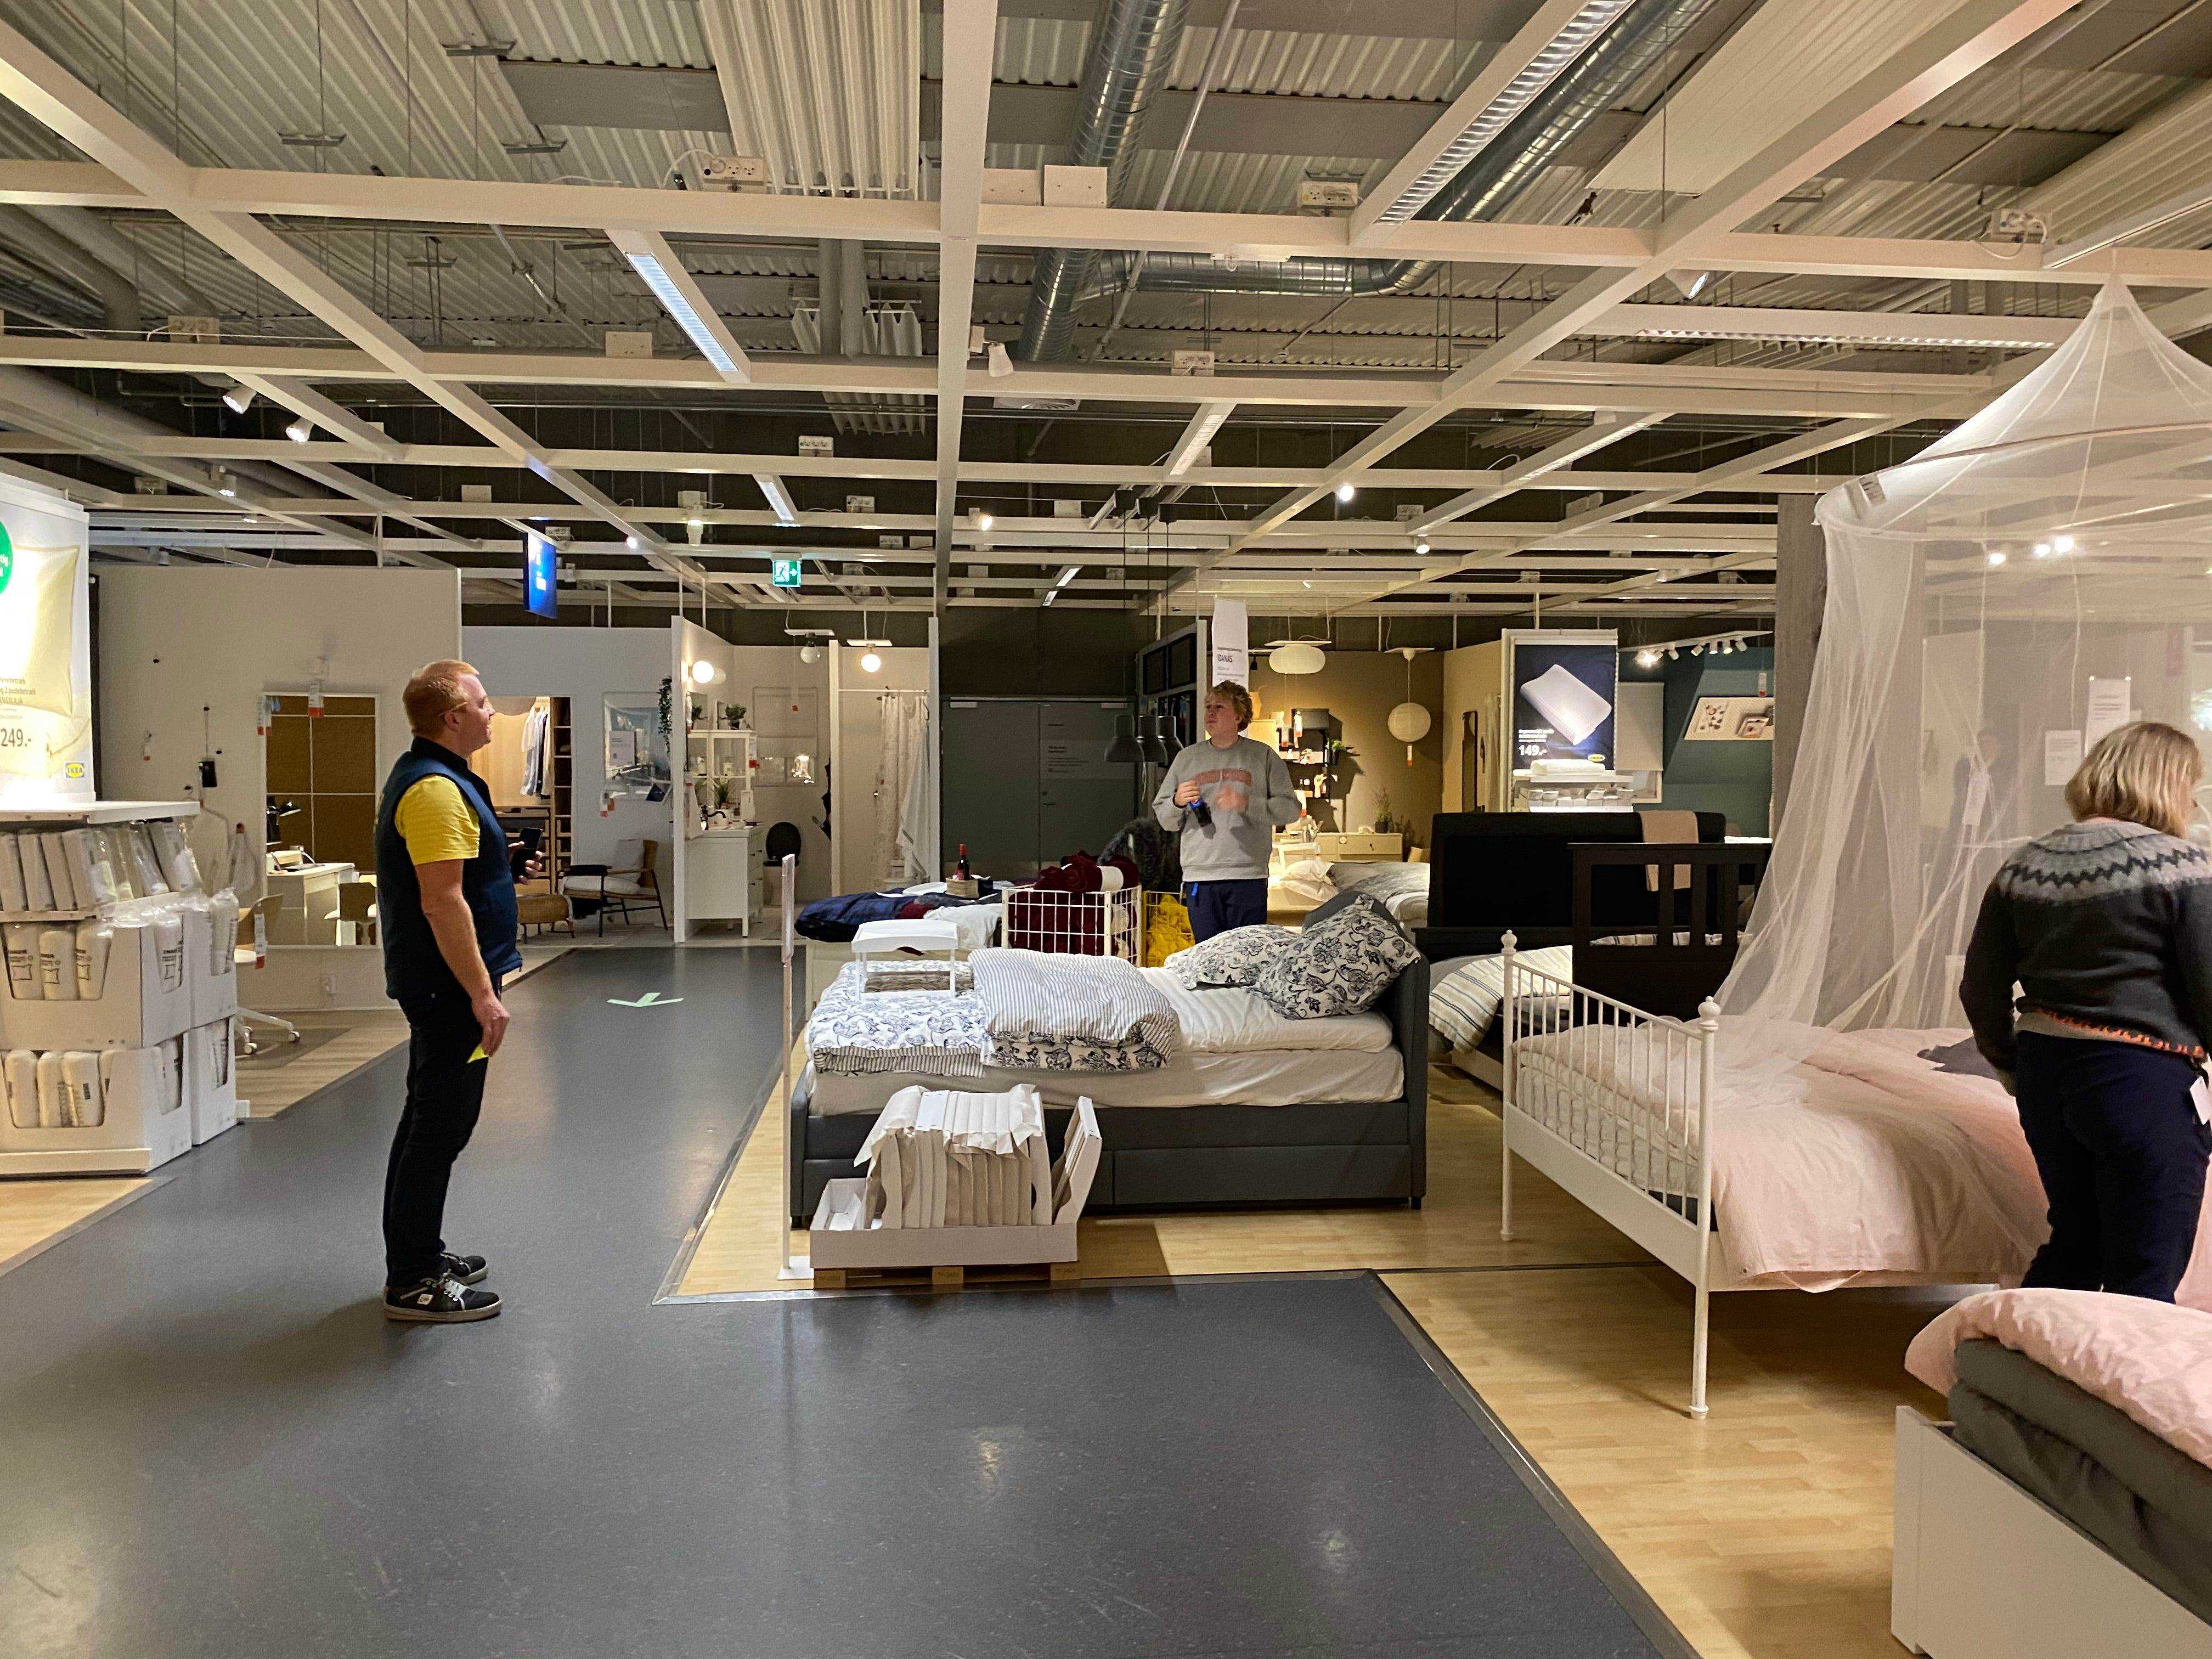 Peter Elmose (L) sieht zu, wie Kunden und Mitarbeiter im IKEA-Showroom Betten zum Schlafen auswählen.